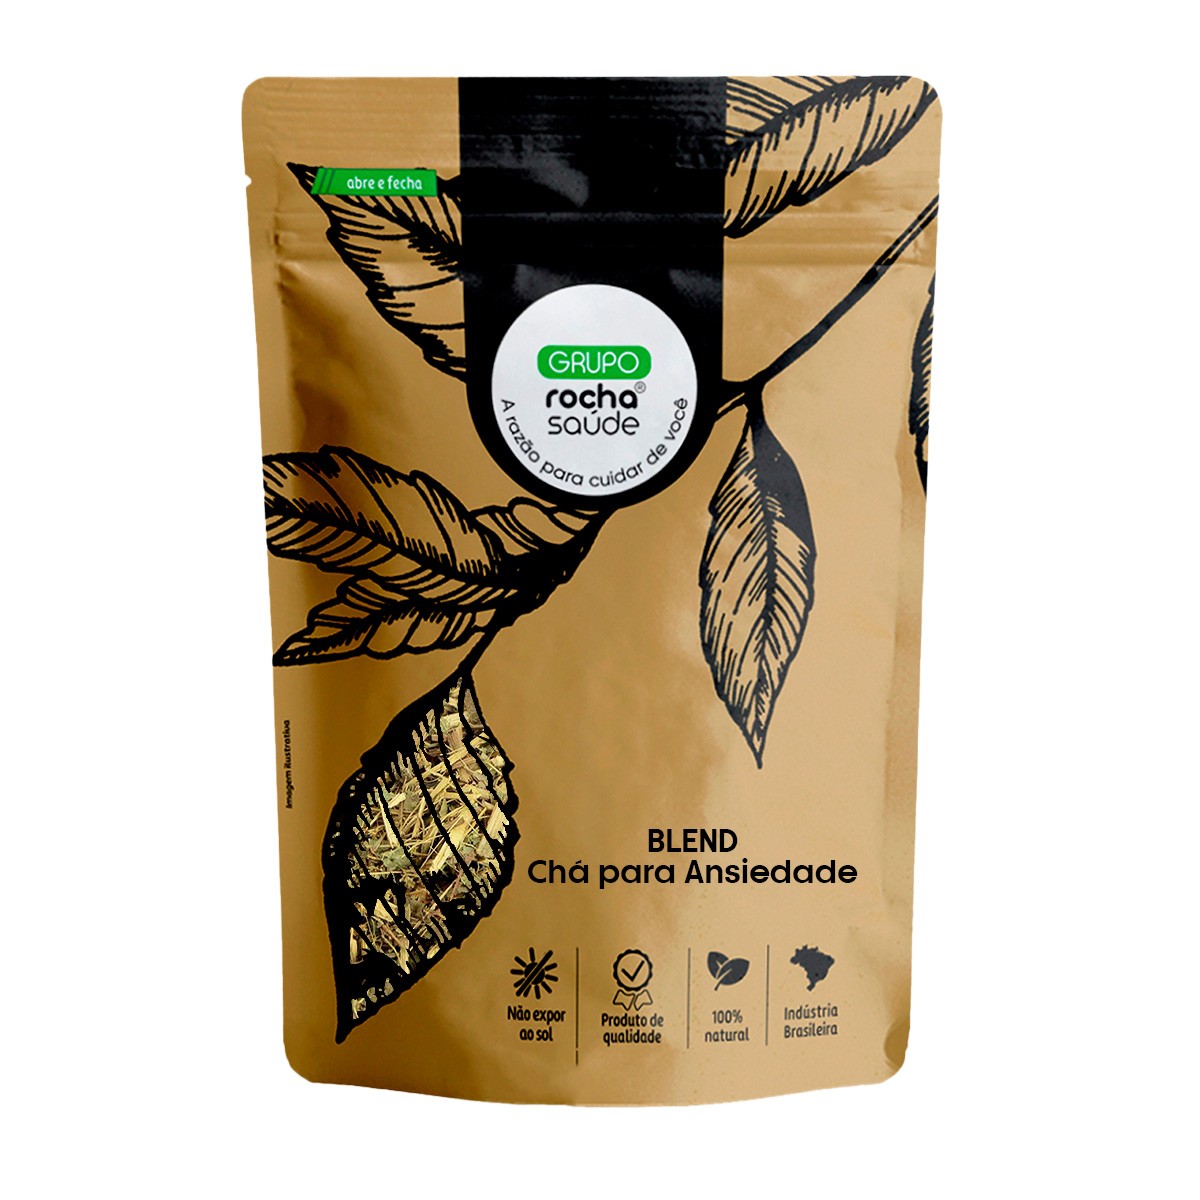 Blend - Chá para Ansiedade - 100% Natural - Alta Qualidade